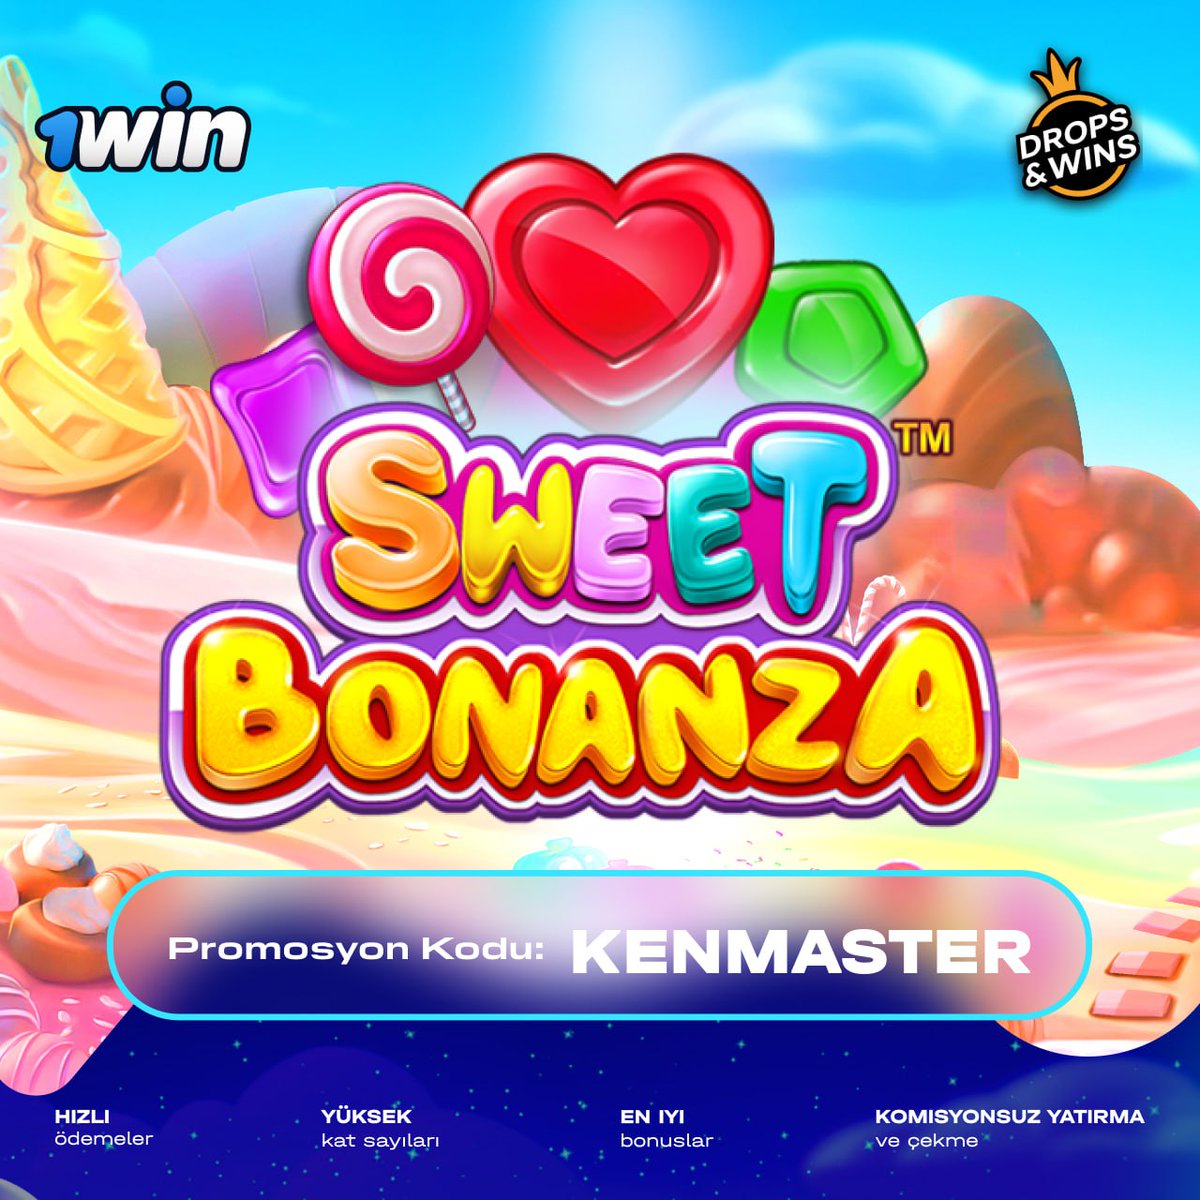 🍭 Herkesin bildiği slot oyunu 'Sweet Bonanza' ile müthiş kazançlara ulaşın! 

💰 Harika kazançları dünya devi 1Win'de yakalayın. 

💙 Hayâllere giden yol #1Win'den geçer. 

🍭 hey.link/1Win